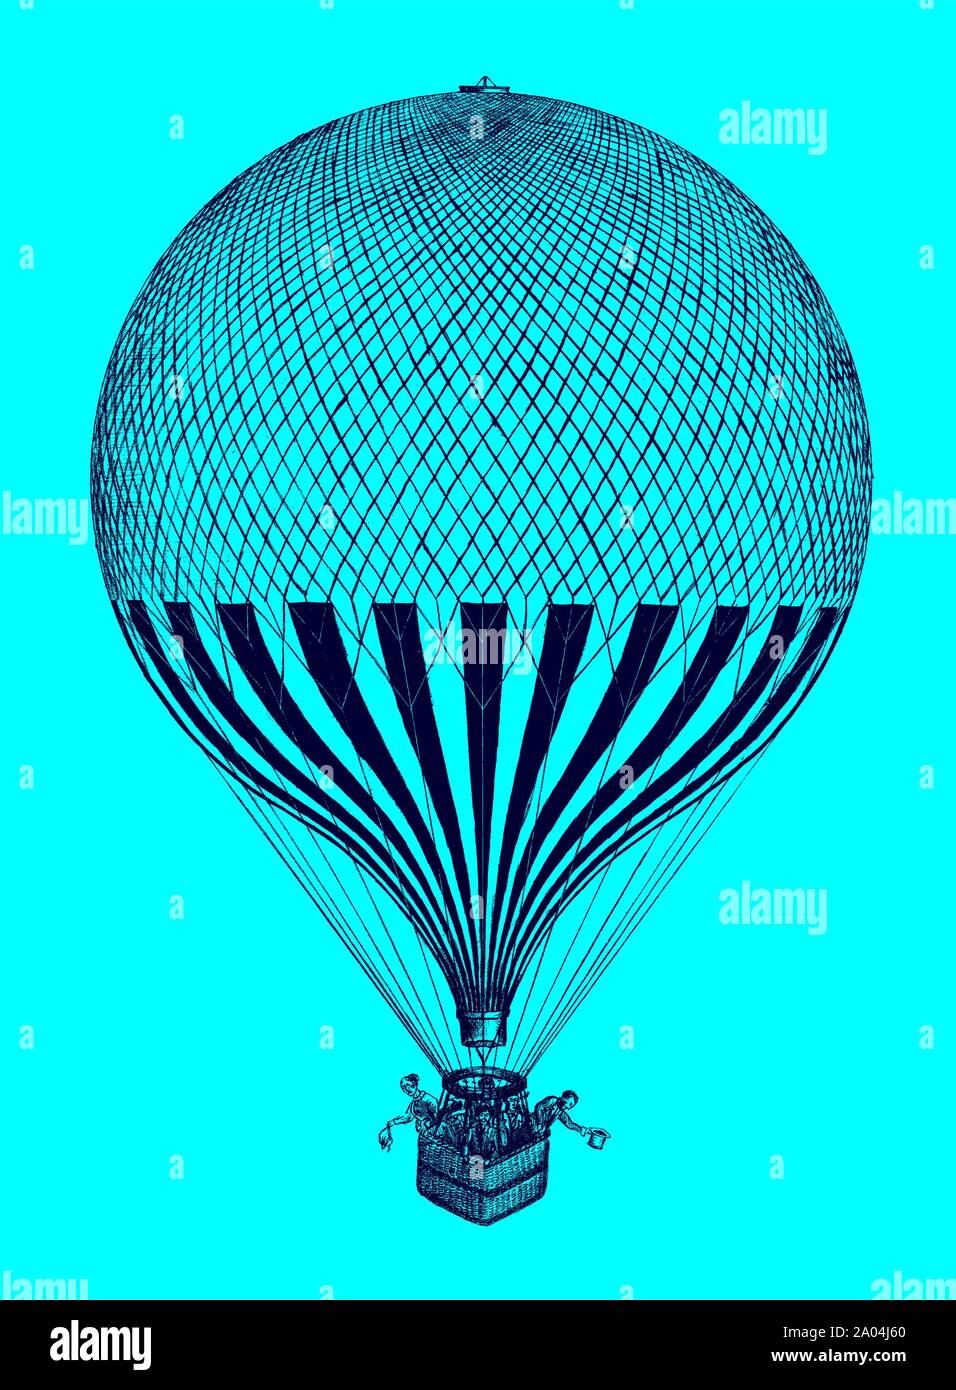 Historische Ballon mit mehrere Passagiere im Korb vor einem blauen Hintergrund stehen. Abbildung: Nach einer Lithographie aus dem 19. Jahrhundert Stock Vektor